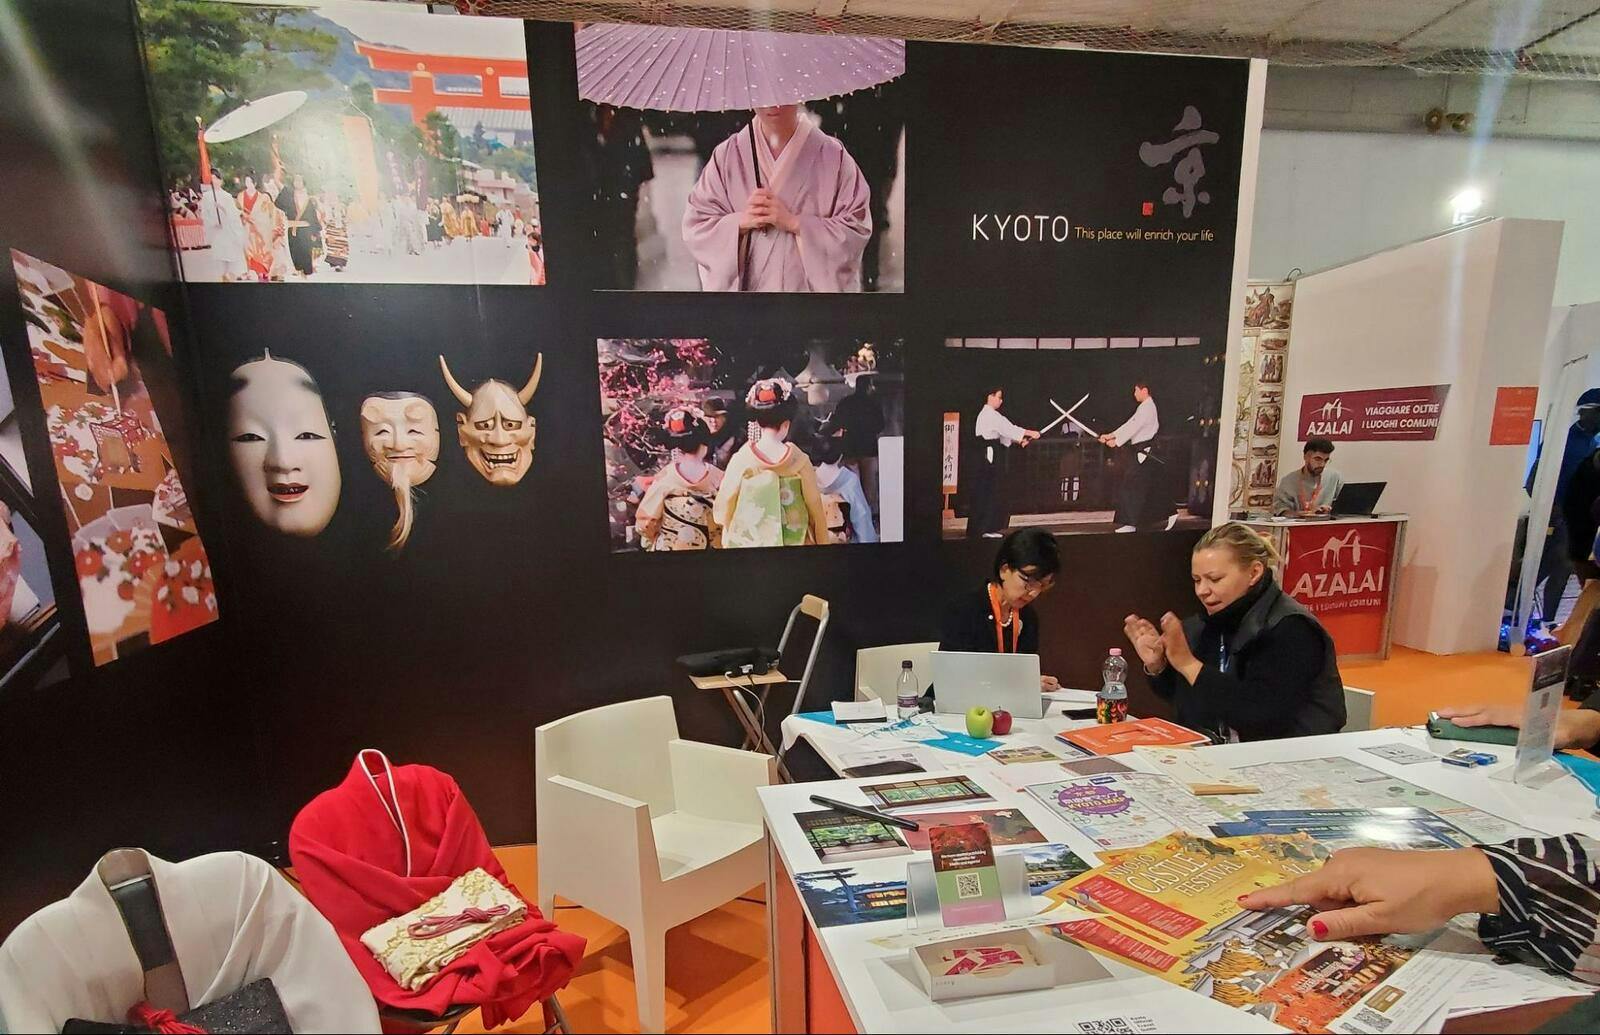 スイス国際ホリデー展示会にて、京都市のブース。能面の写真や武道の写真が装飾に使われている：京都市観光協会提供